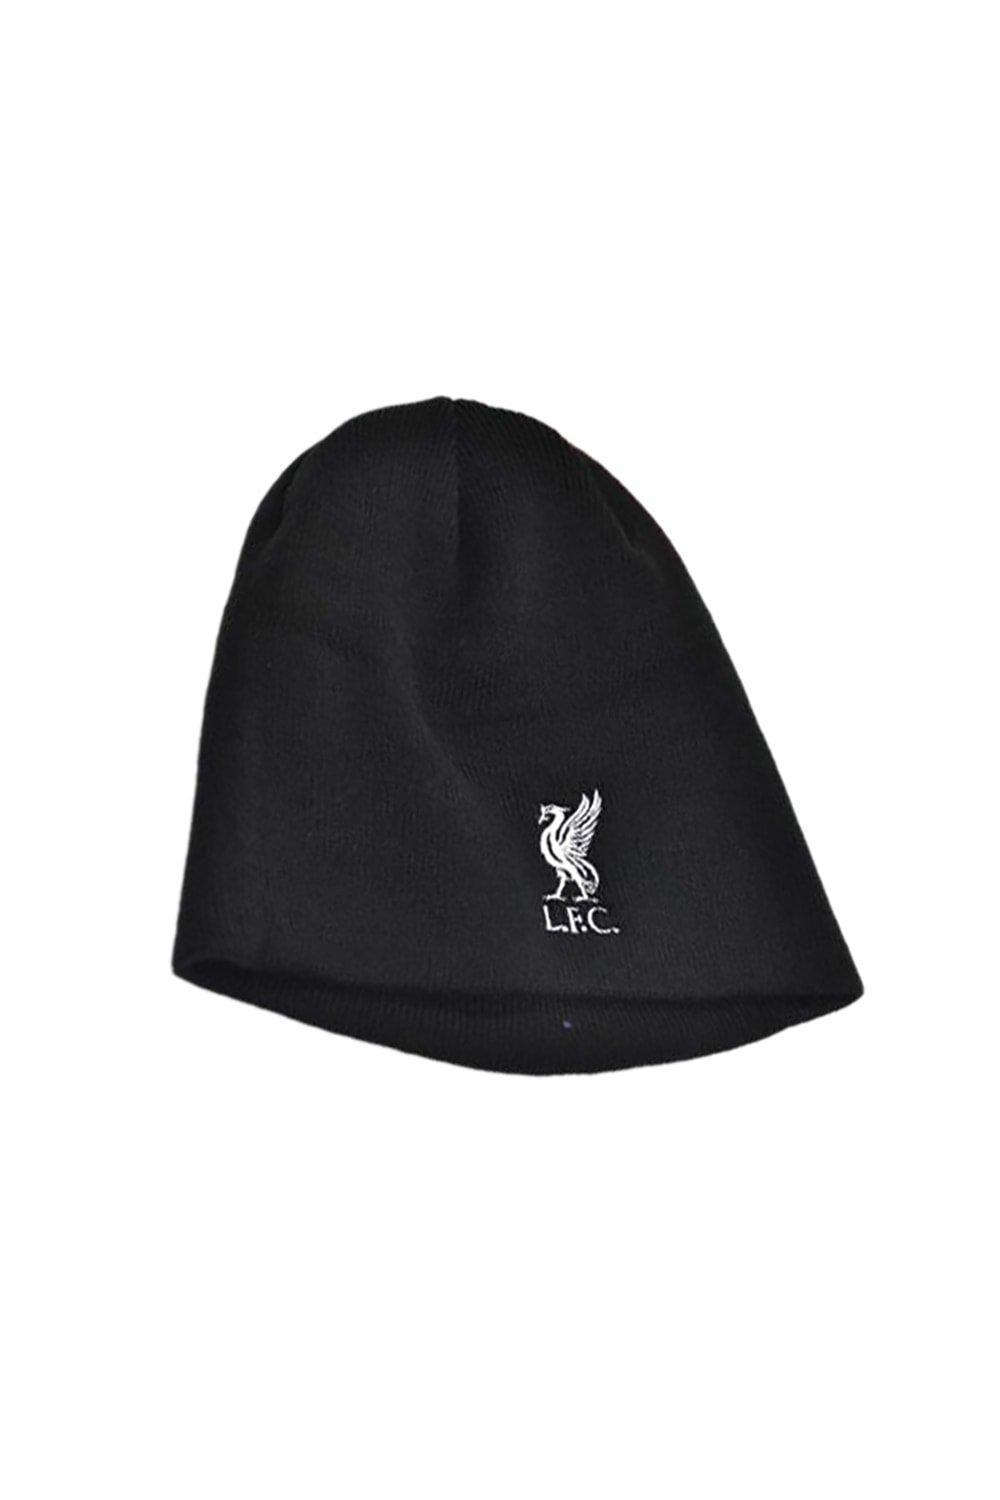 Вязаная шапка-бини с гербом Liverpool FC, черный герб тулы вышитый в рамке 45 53см